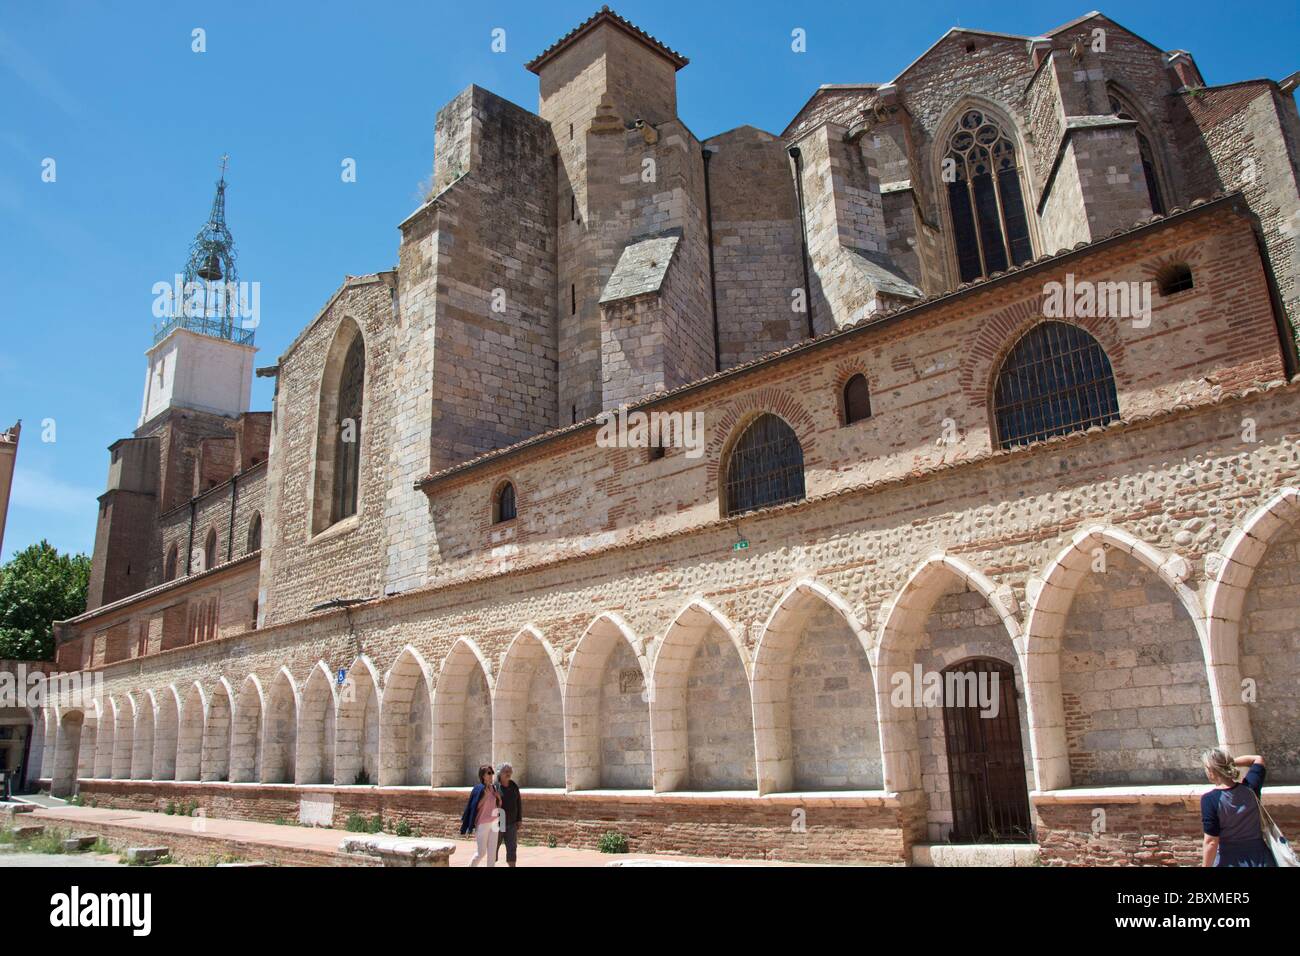 Eindrücke aus der Altstadt von Perpignan, Hauptstadt der Region Pyrénées-Orientales Foto Stock